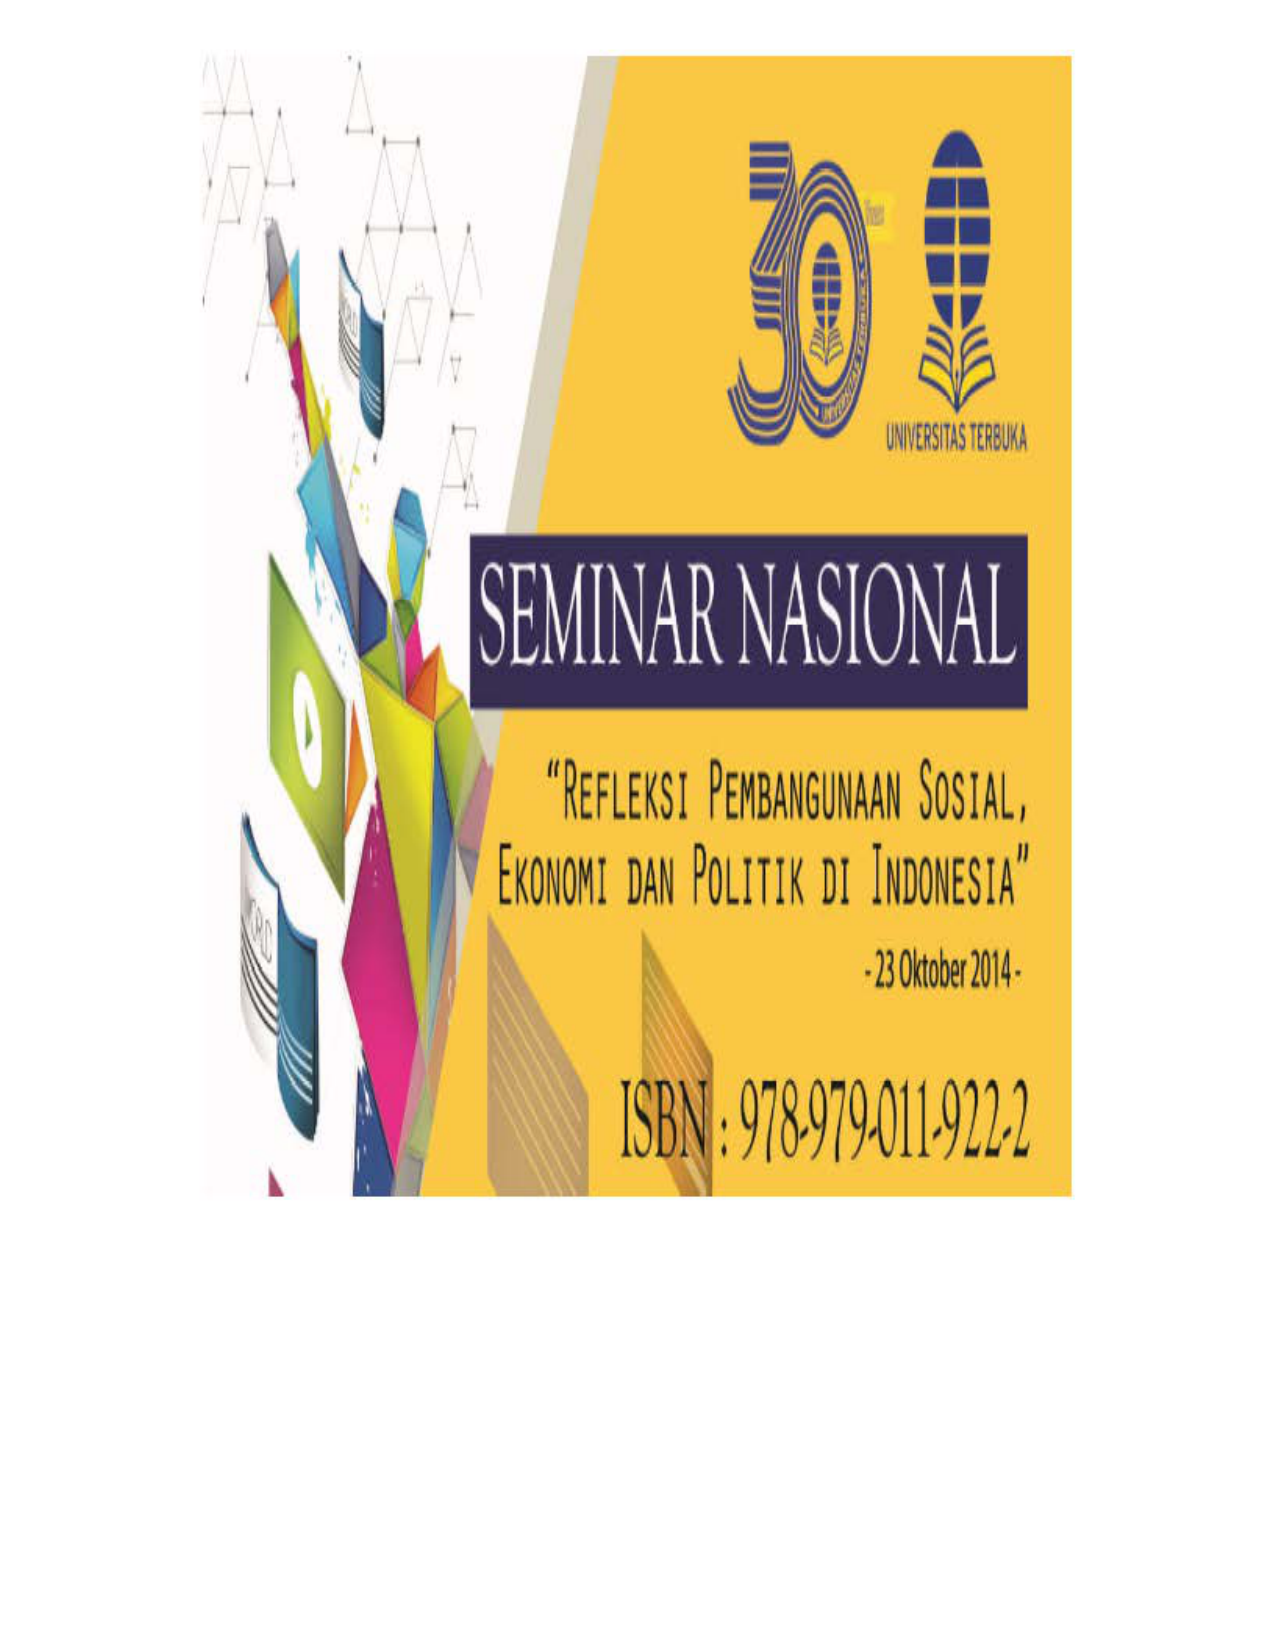 Seminar Nasional UT 2014 Refleksi Pembangunan Sosial Ekonomi dan Politik di Indonesia ISBN 978 979 011 922 2 Yang saya hormati Para Peserta Seminar